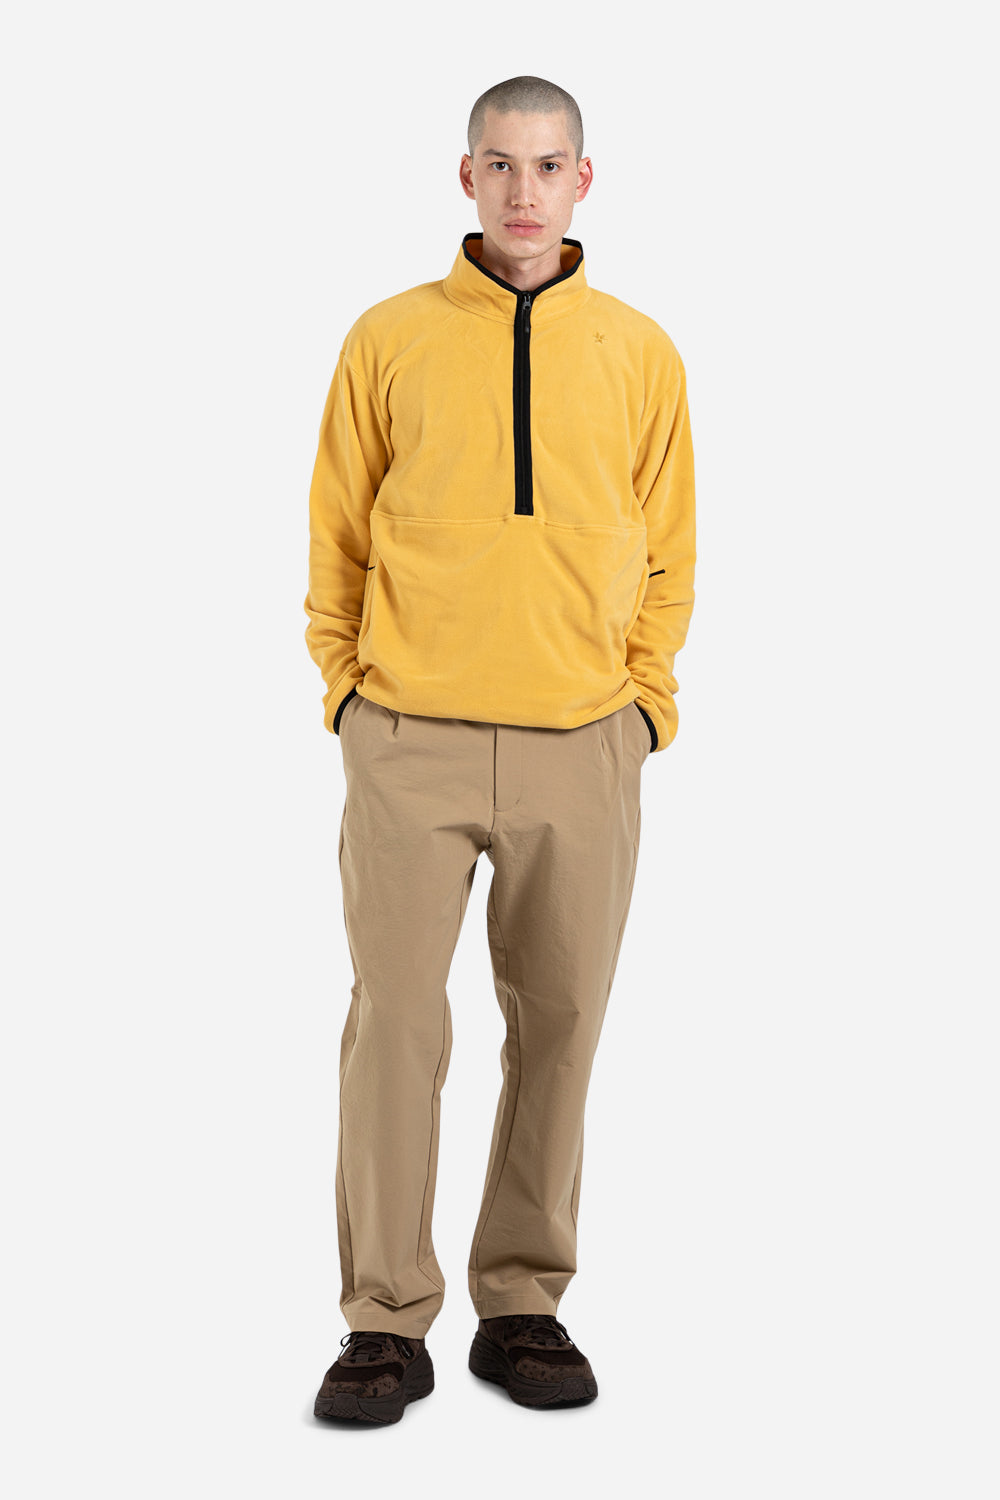 POLARTEC Micro Fleece Half Zip Pullover – Goldwin America